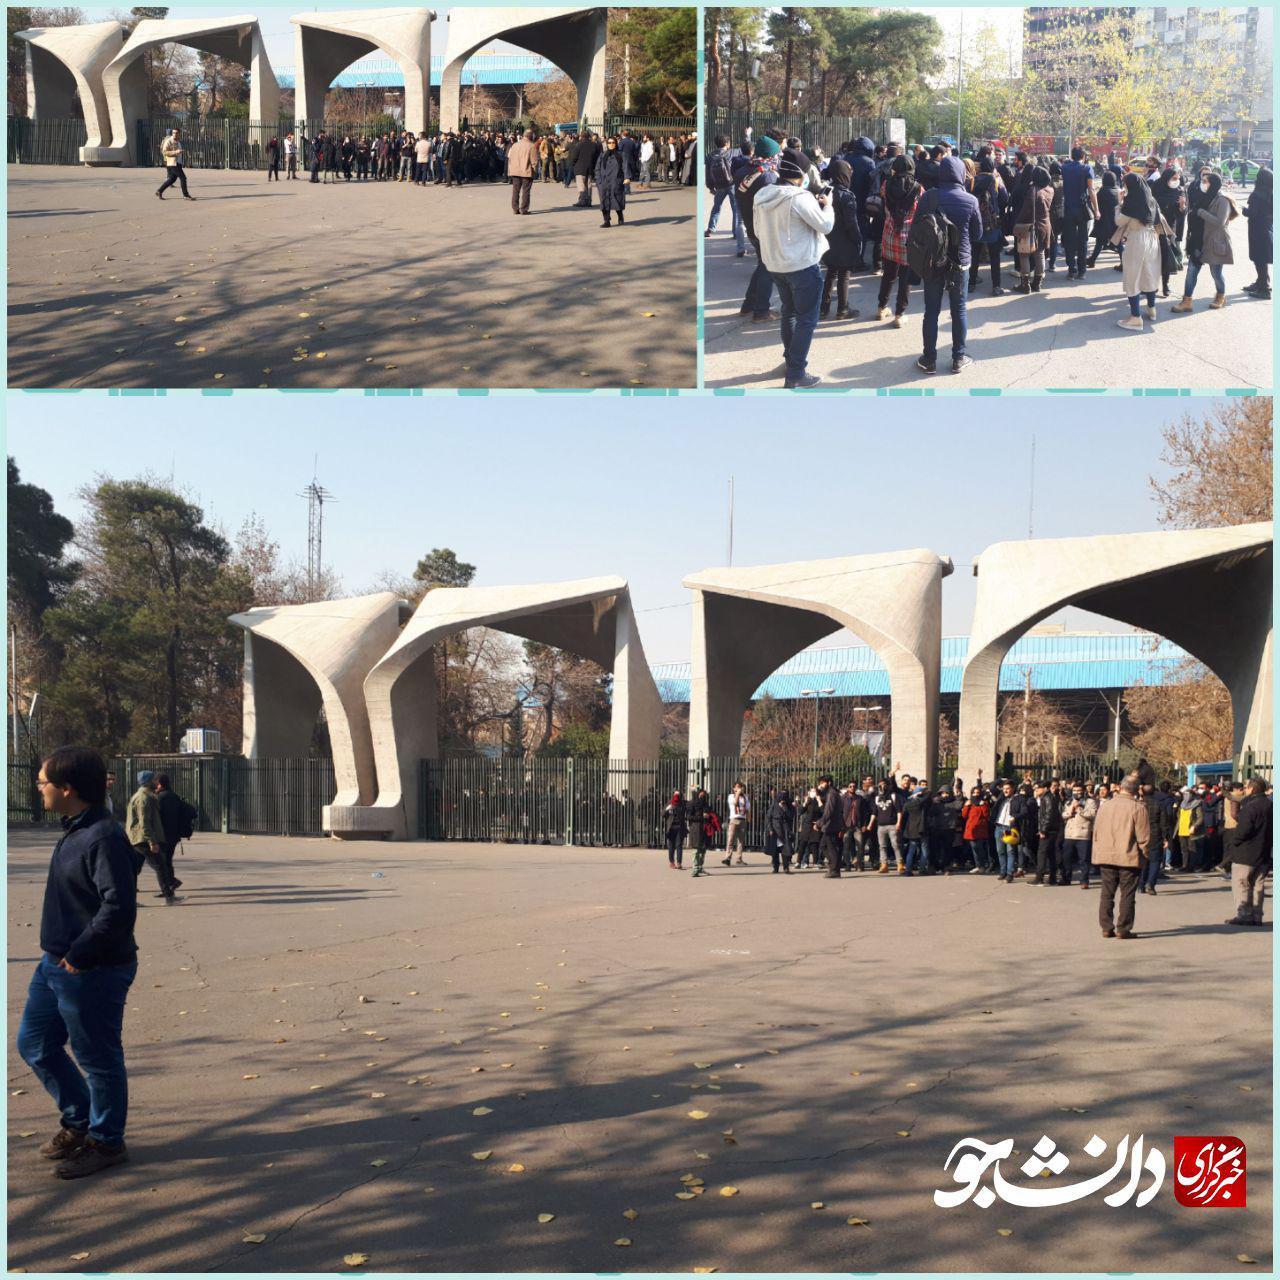 امروز در دانشگاه تهران چه خبر بود؟ + فیلم